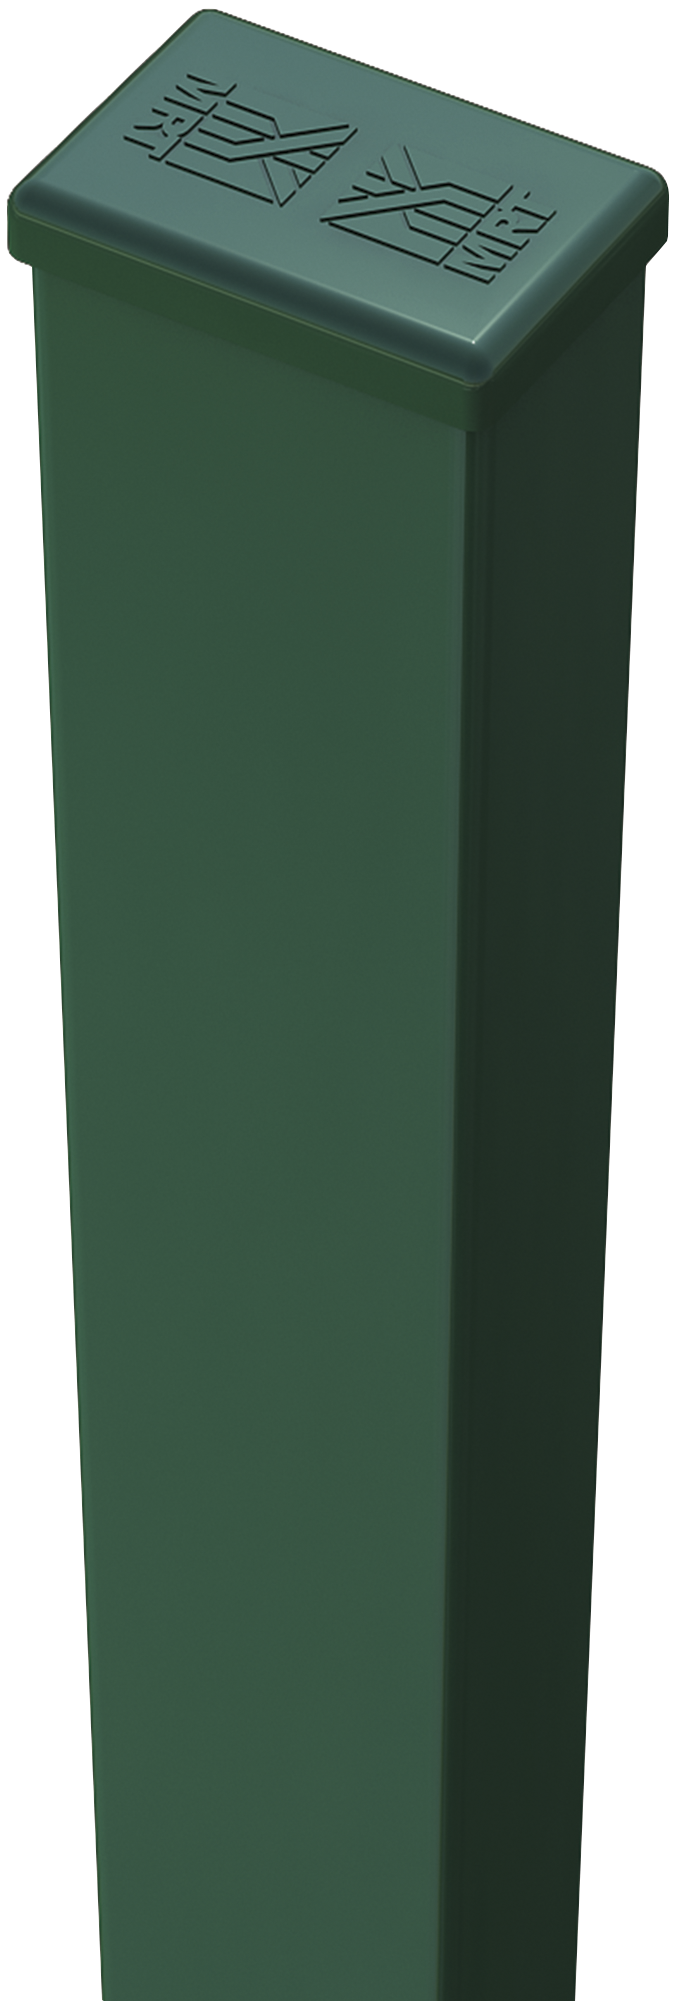 Poste de verde de 40mm y 235 cm